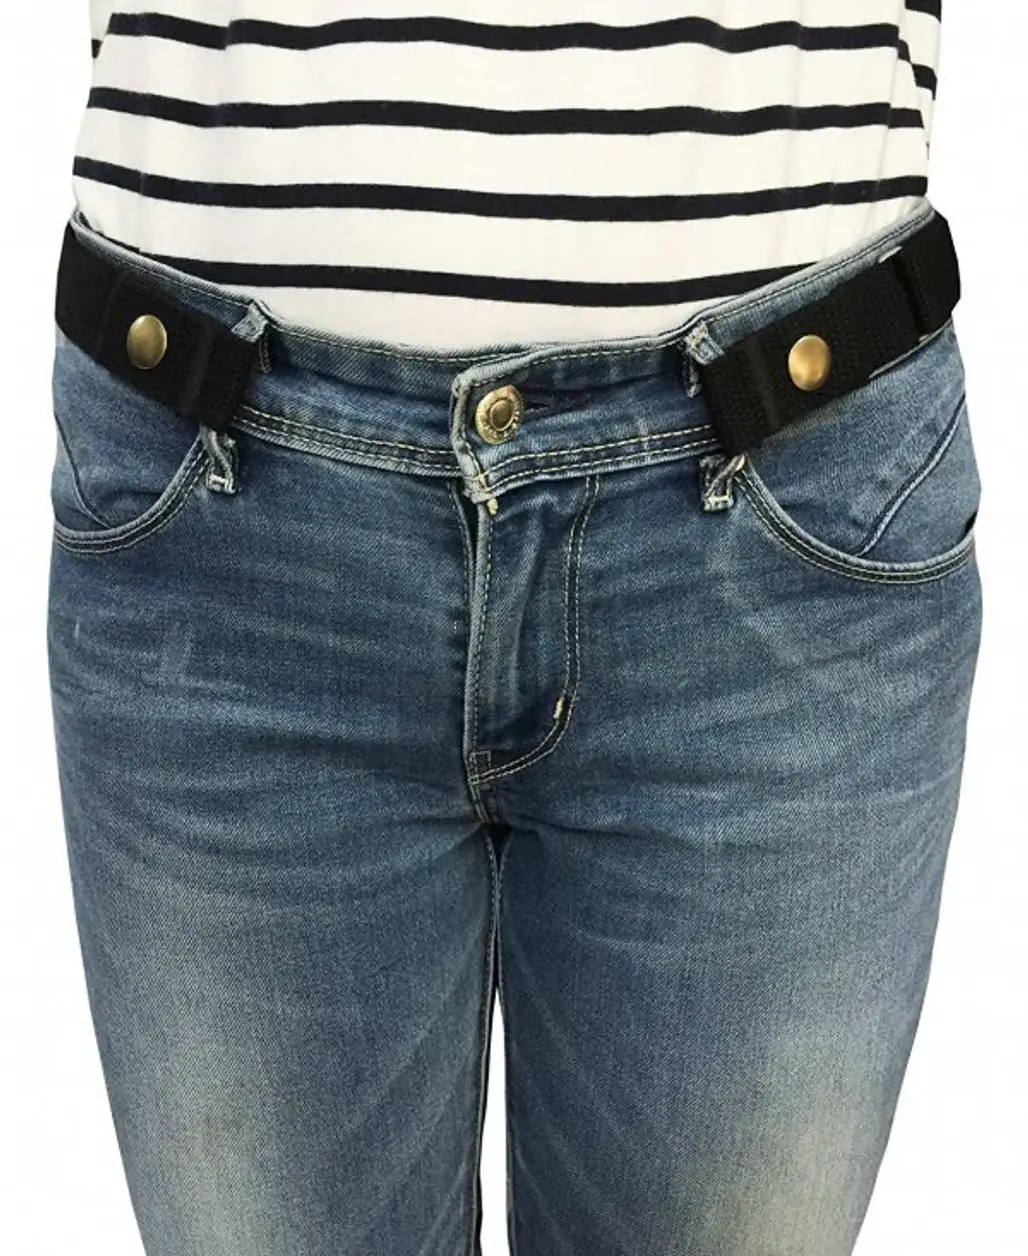 denim, jeans, pocket, waist, button,